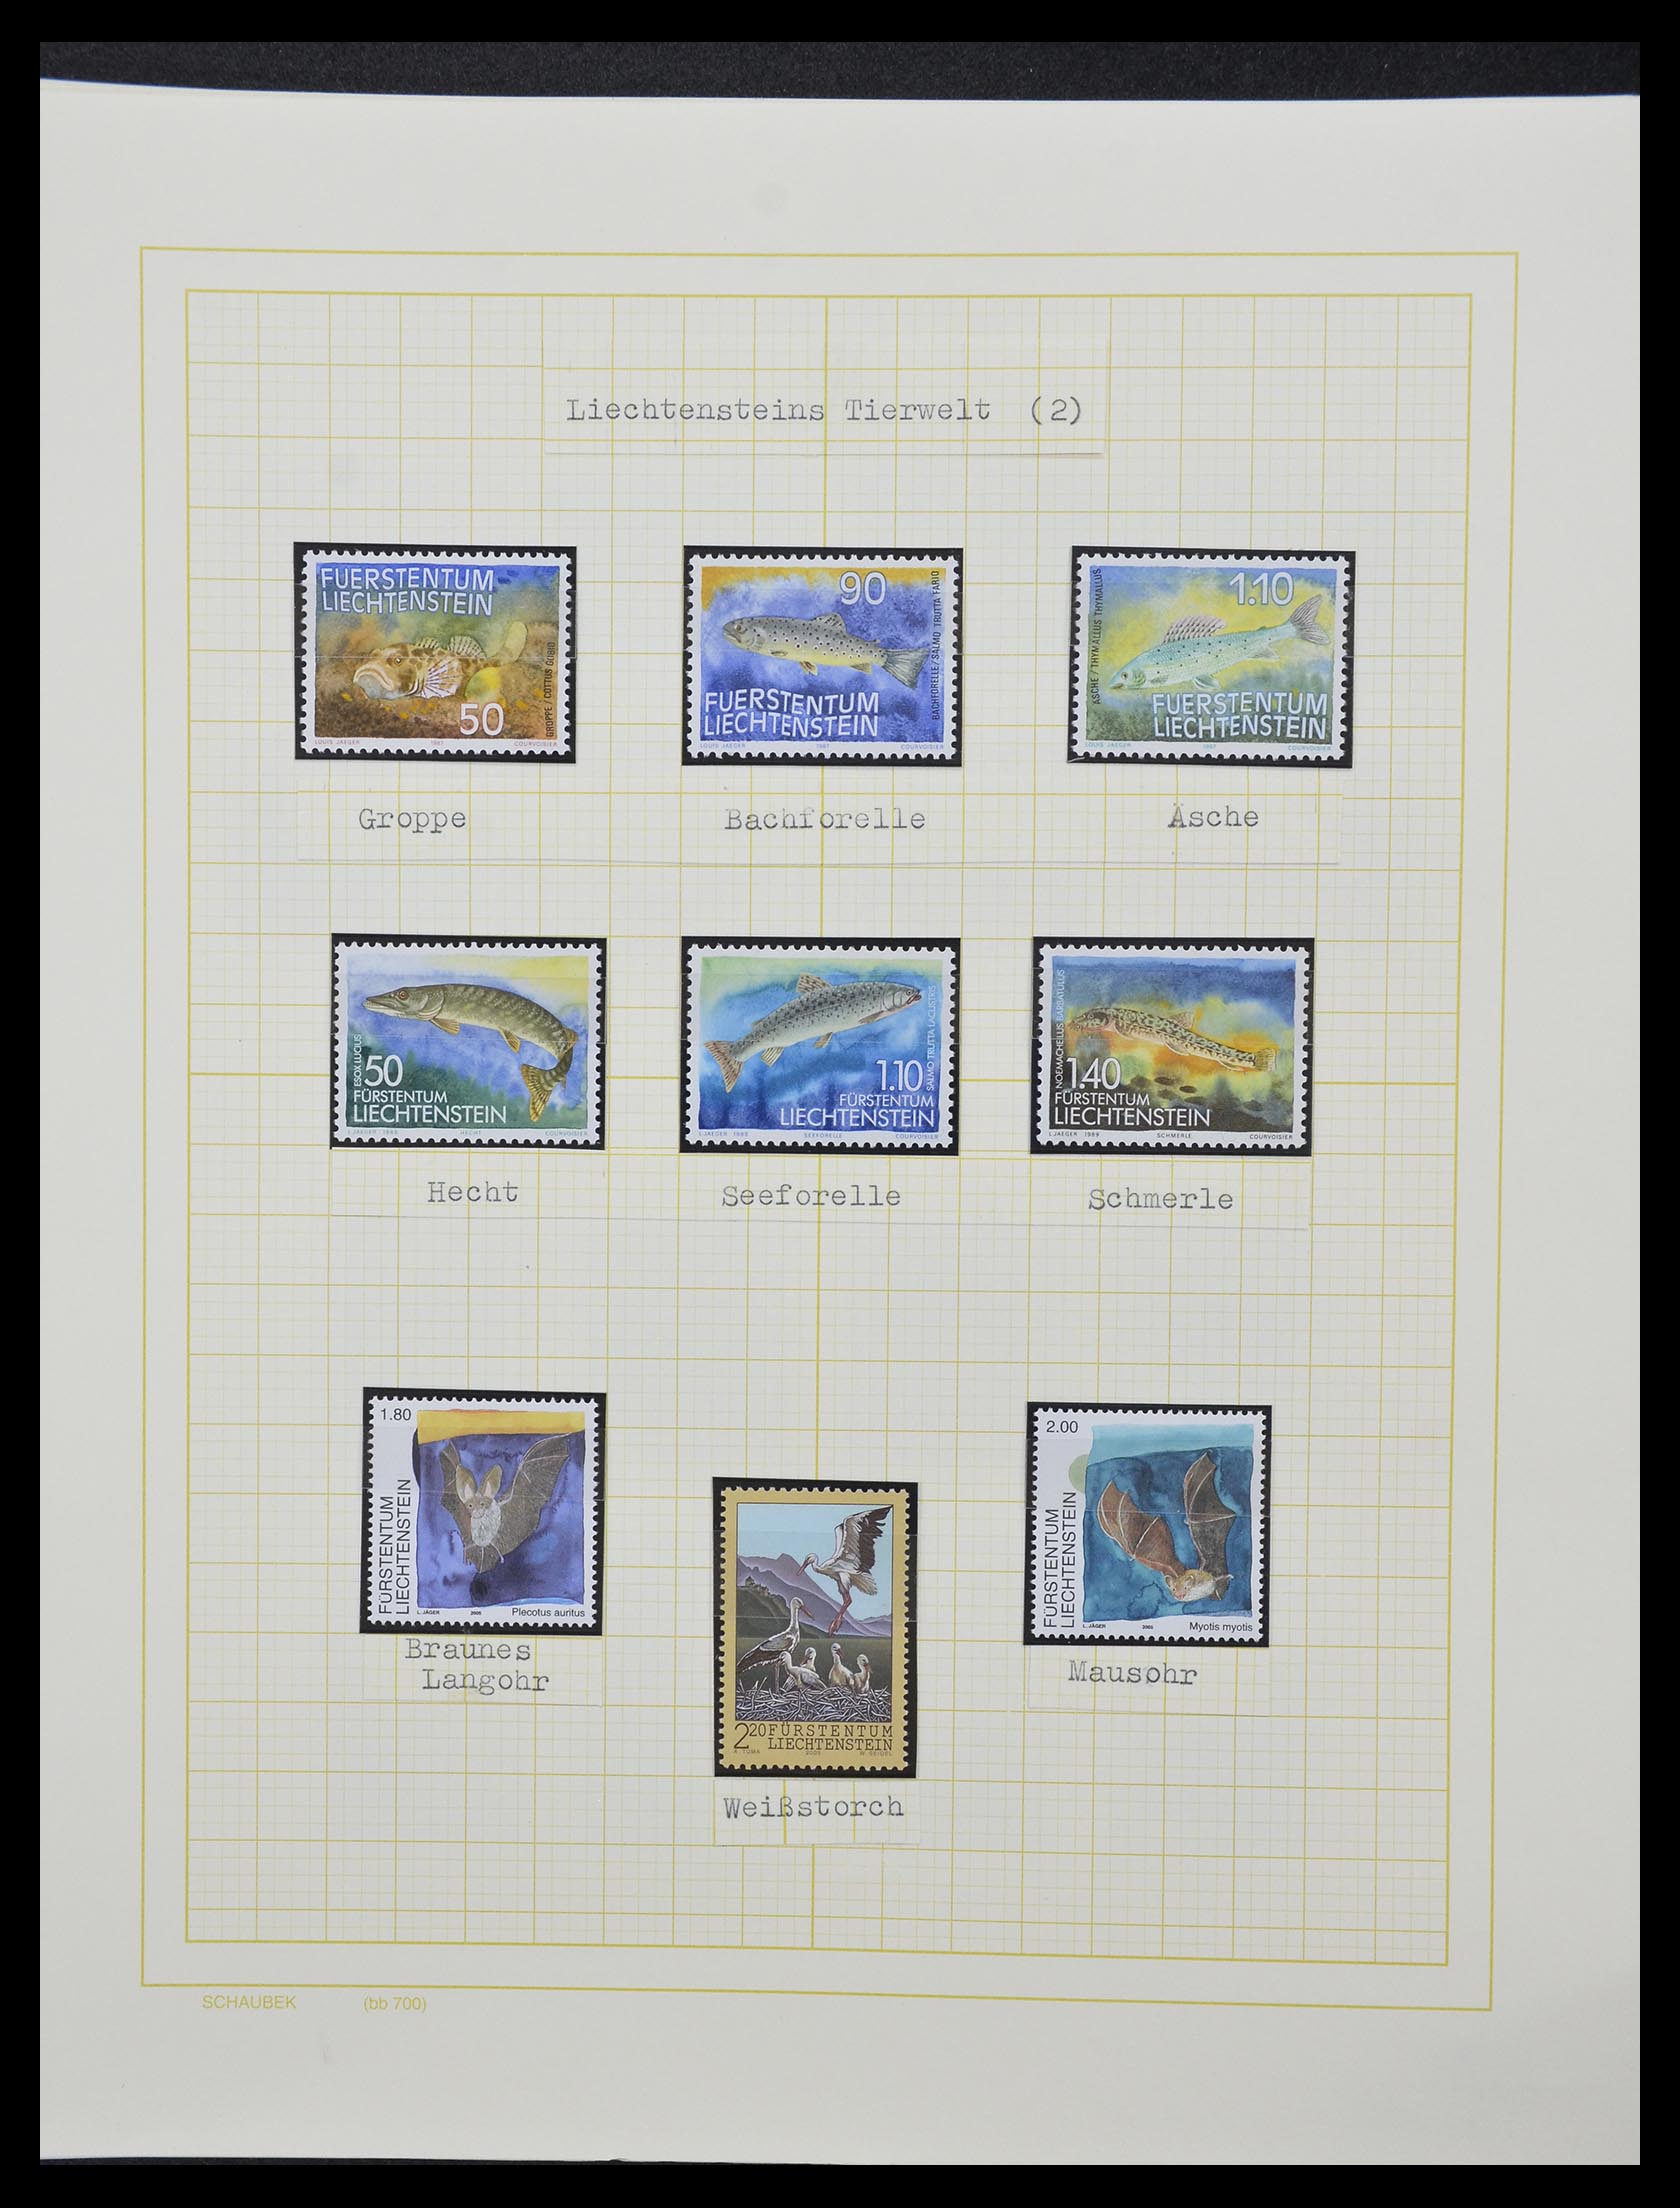 33138 061 - Stamp collection 33138 Liechtenstein 1912-2002.